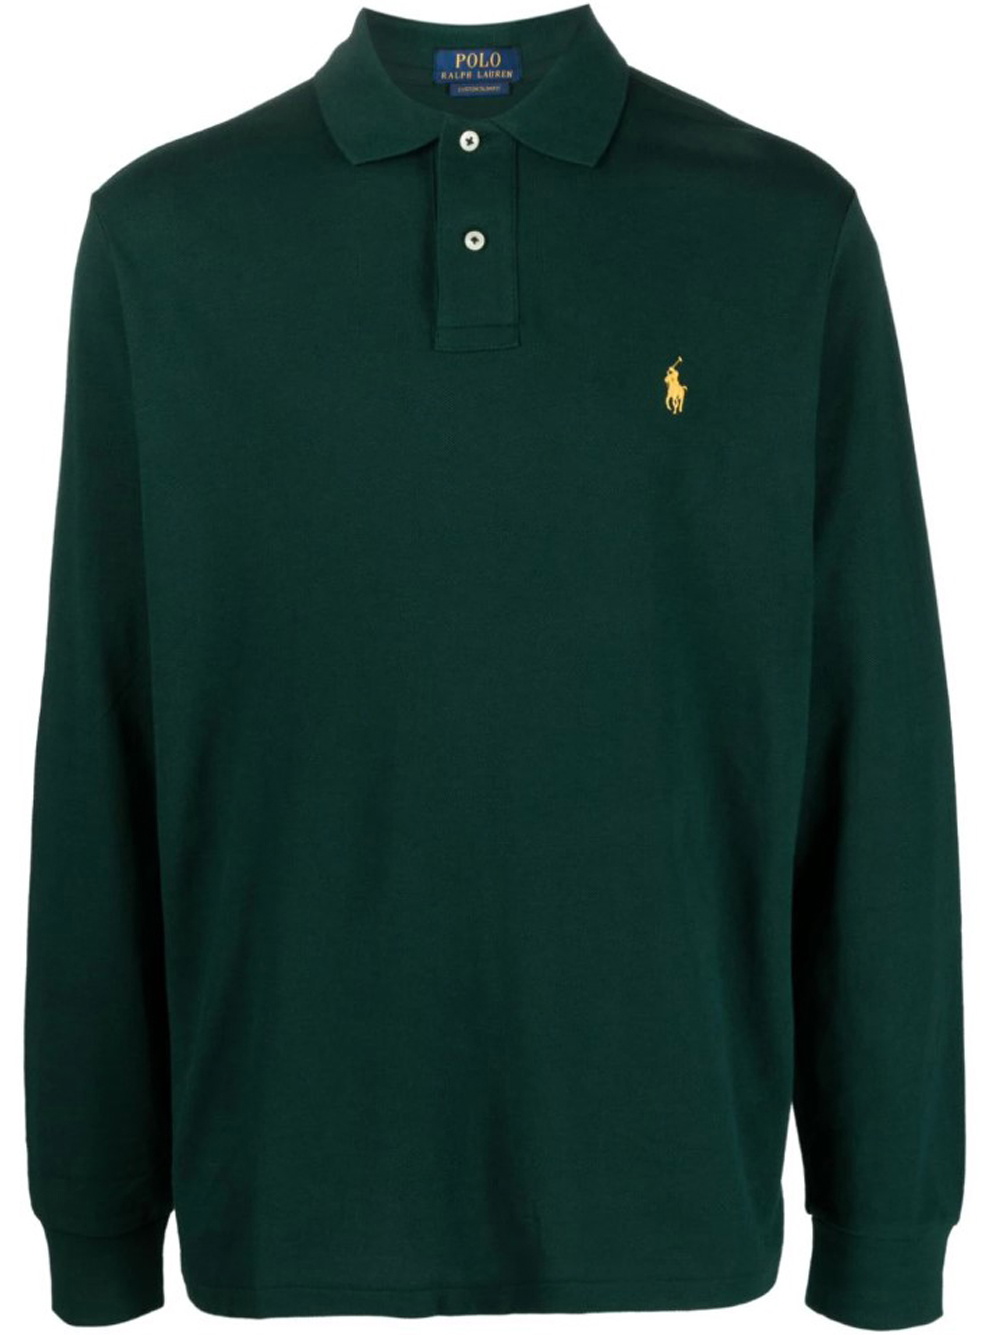 POLO RALPH LAUREN - Sweatshirt With Logo Polo Ralph Lauren